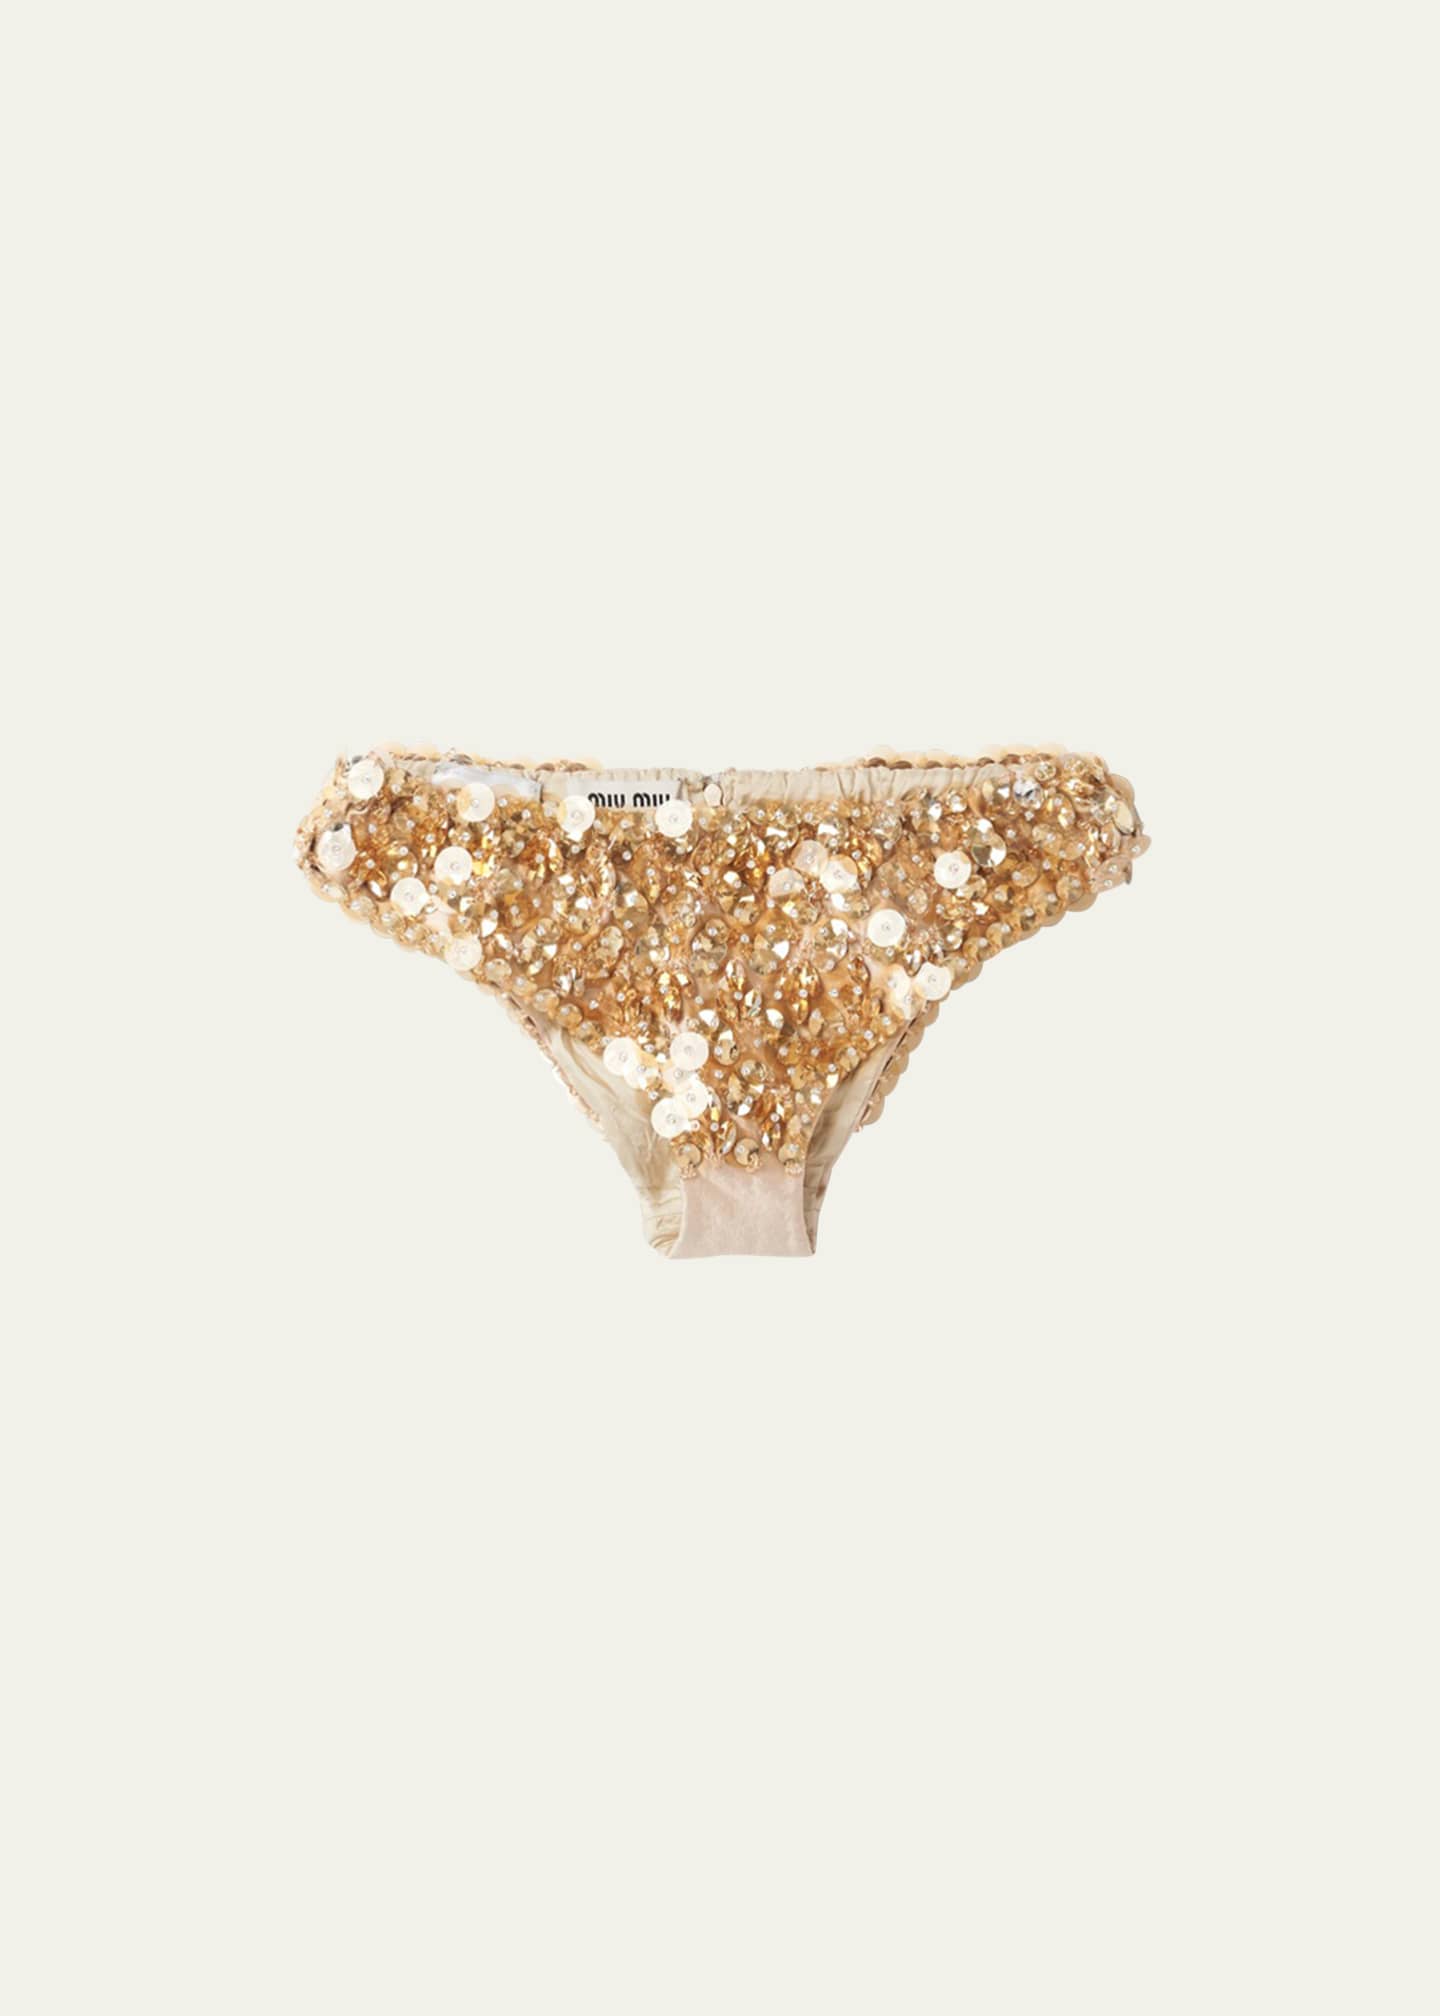 Women's Underwear at Bergdorf Goodman